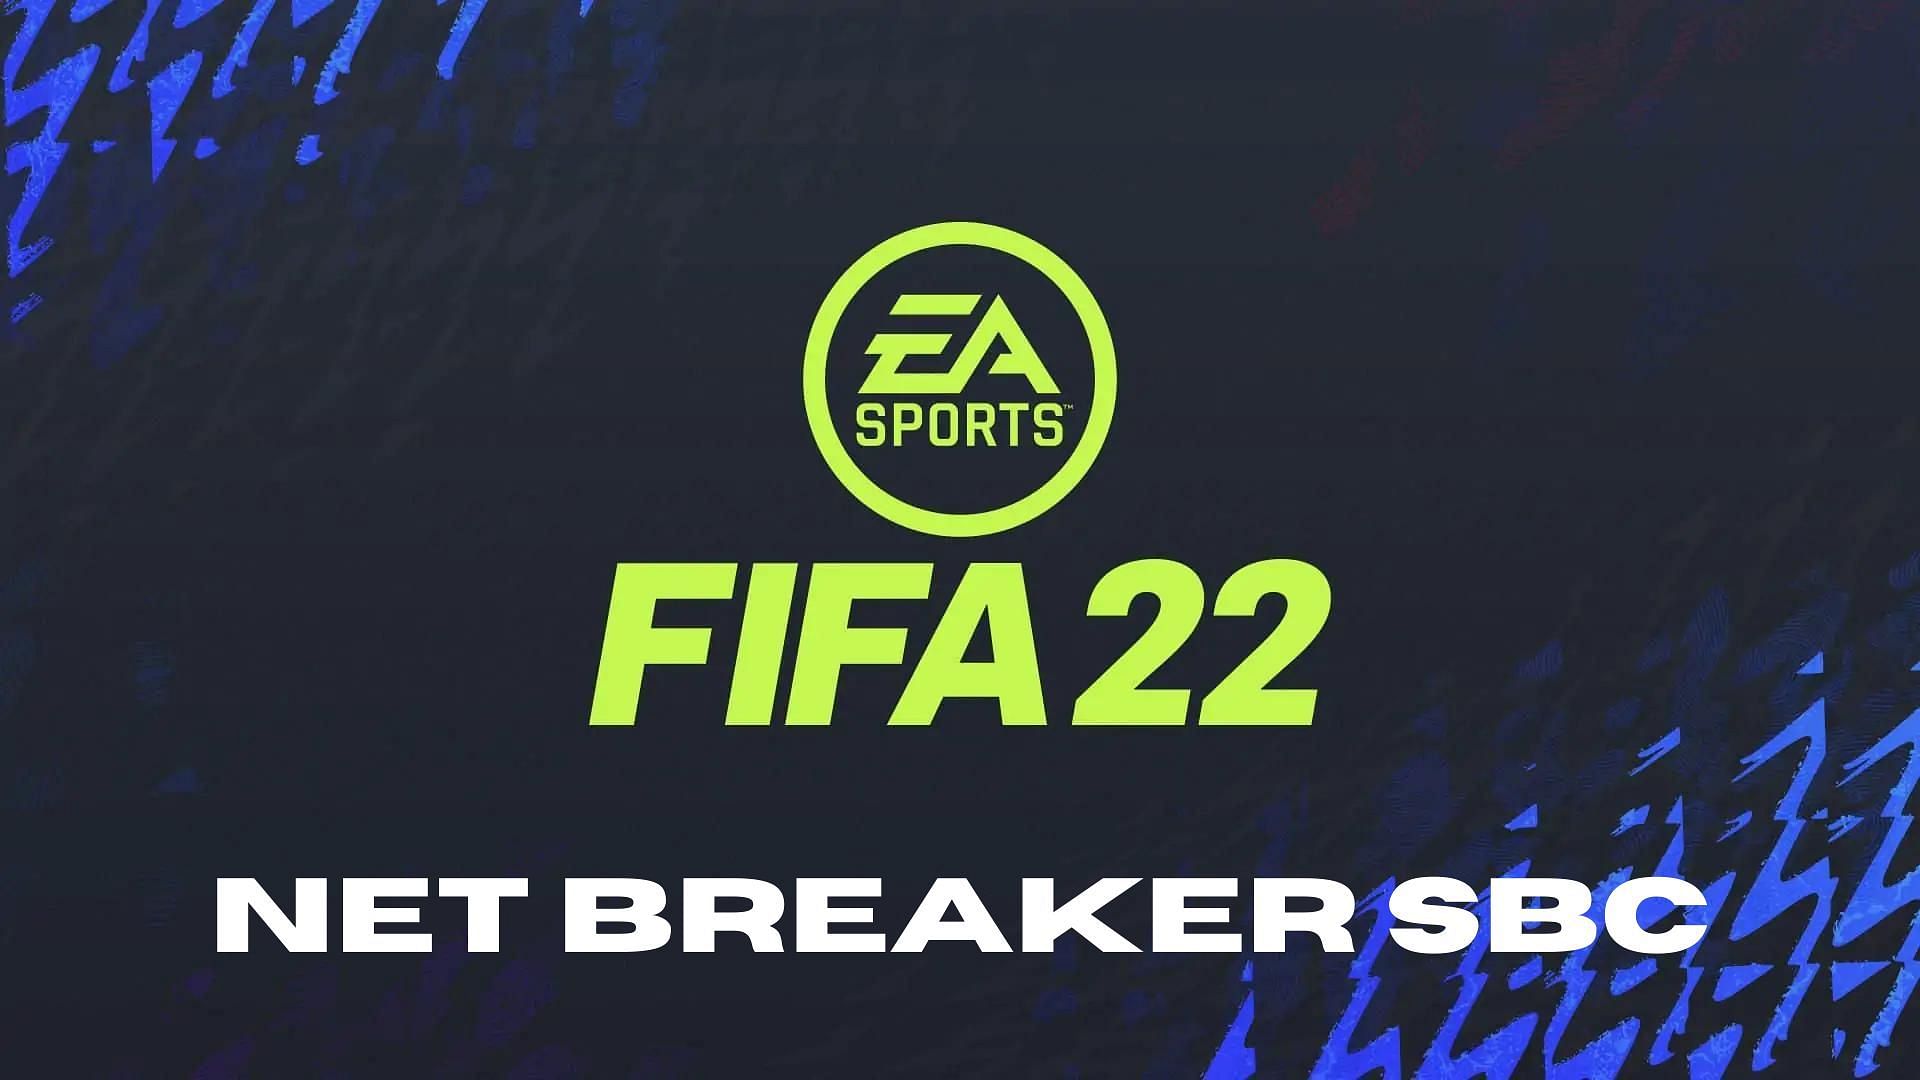 FIFA 22 Net Breaker SBC has been released (Image via Sportskeeda)